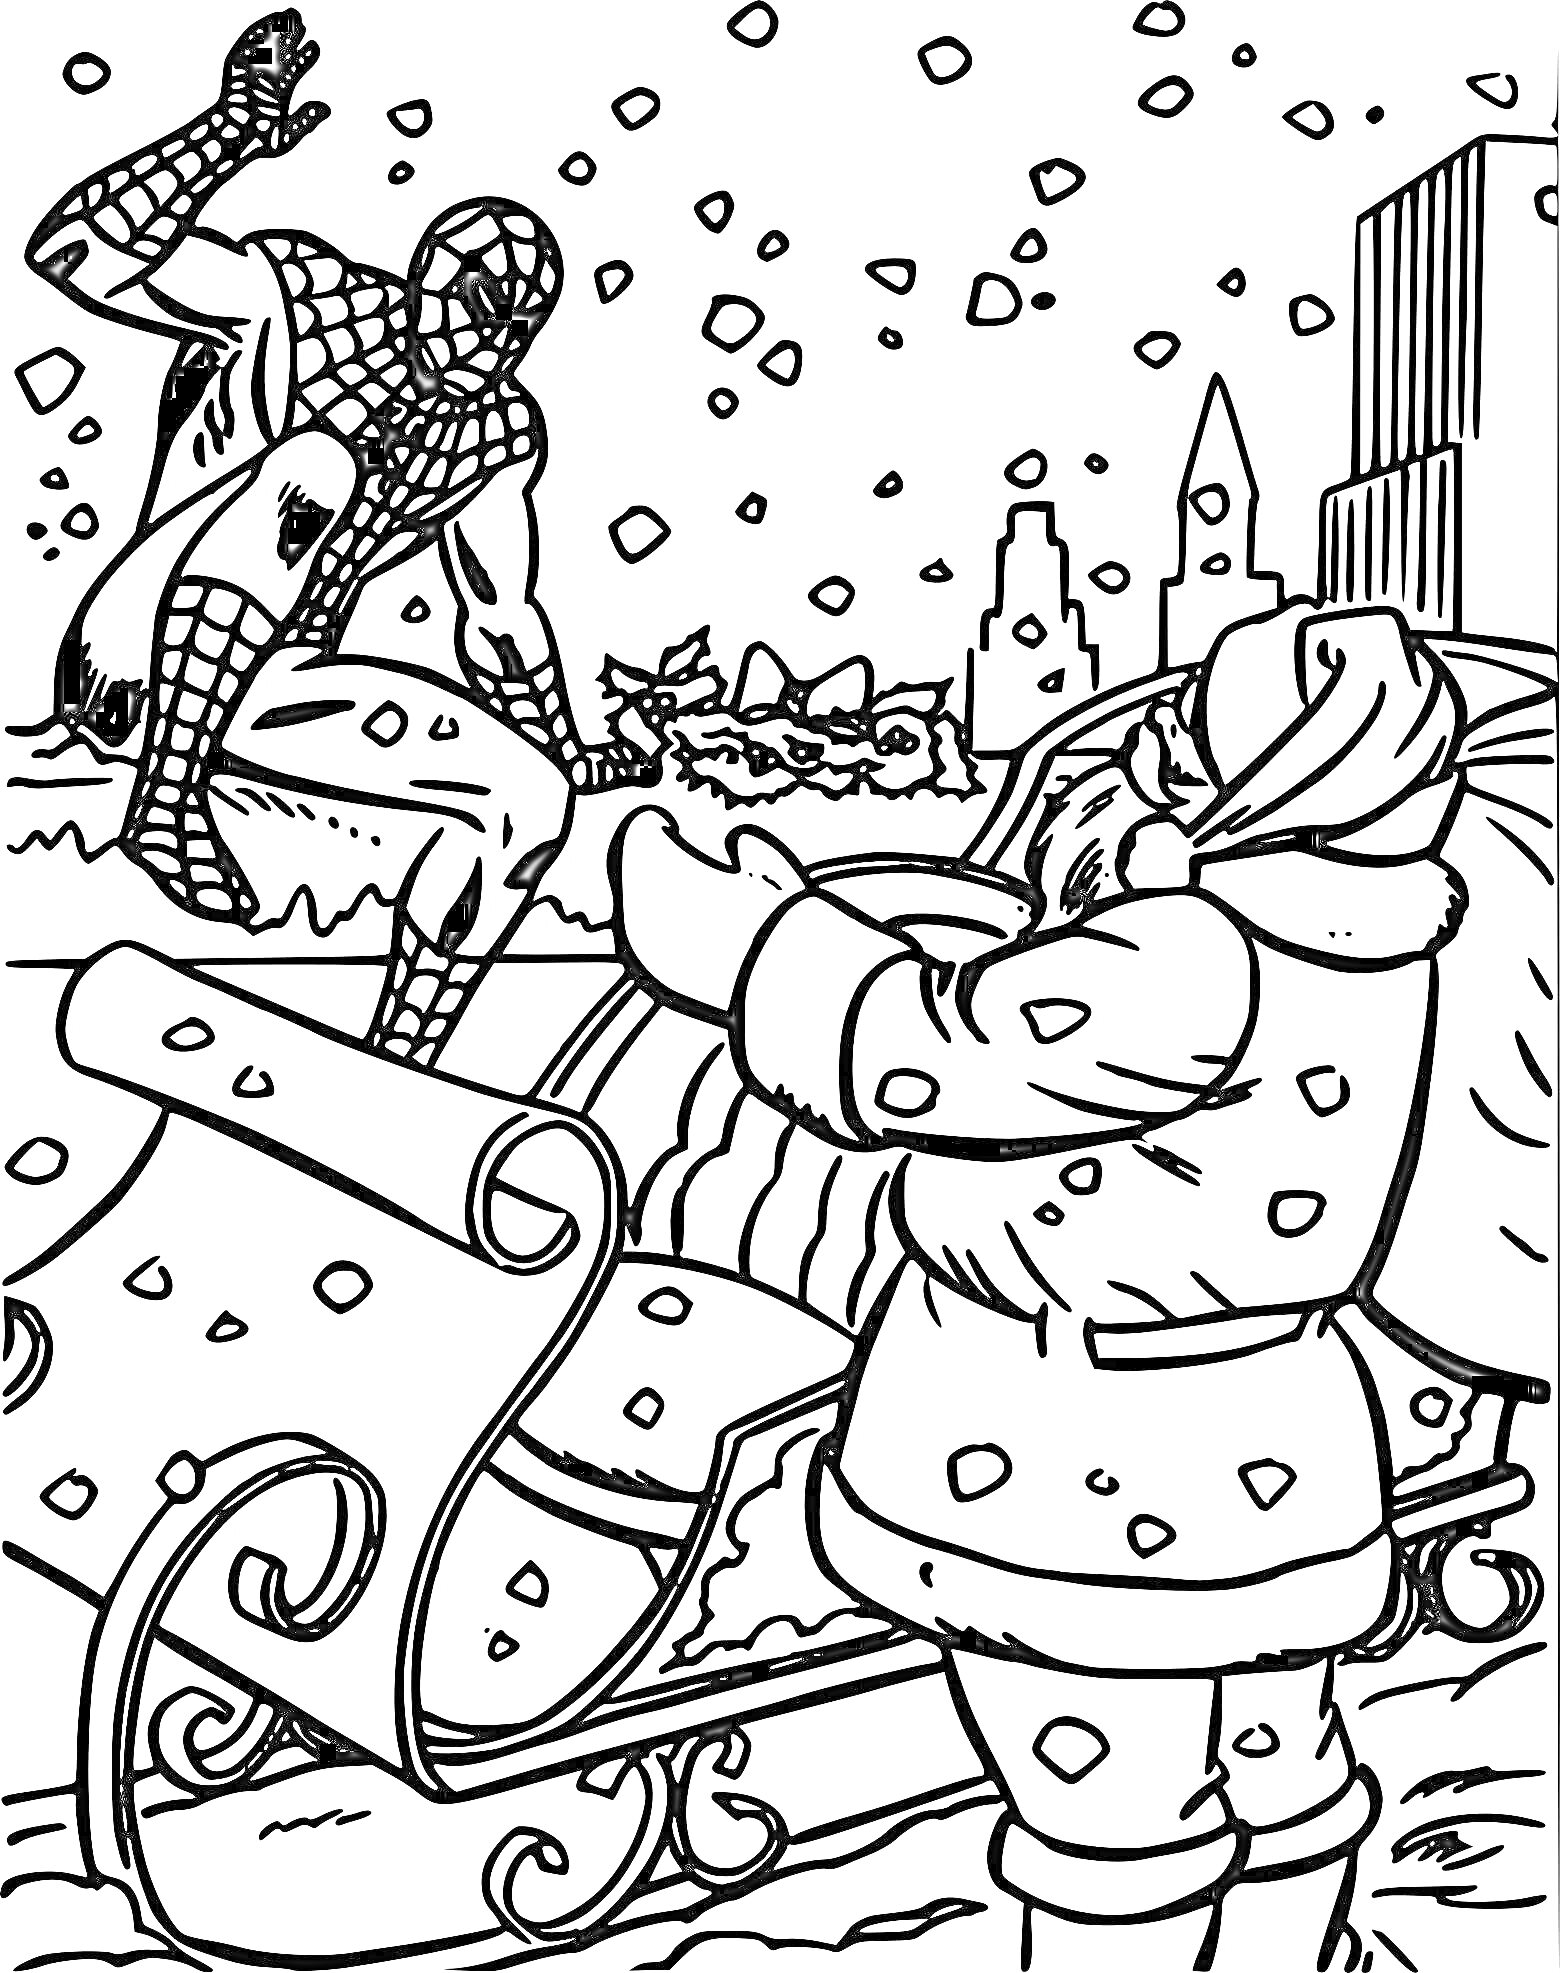 Раскраска Человек Паук приветствует Санта-Клауса около саней в снежном городе